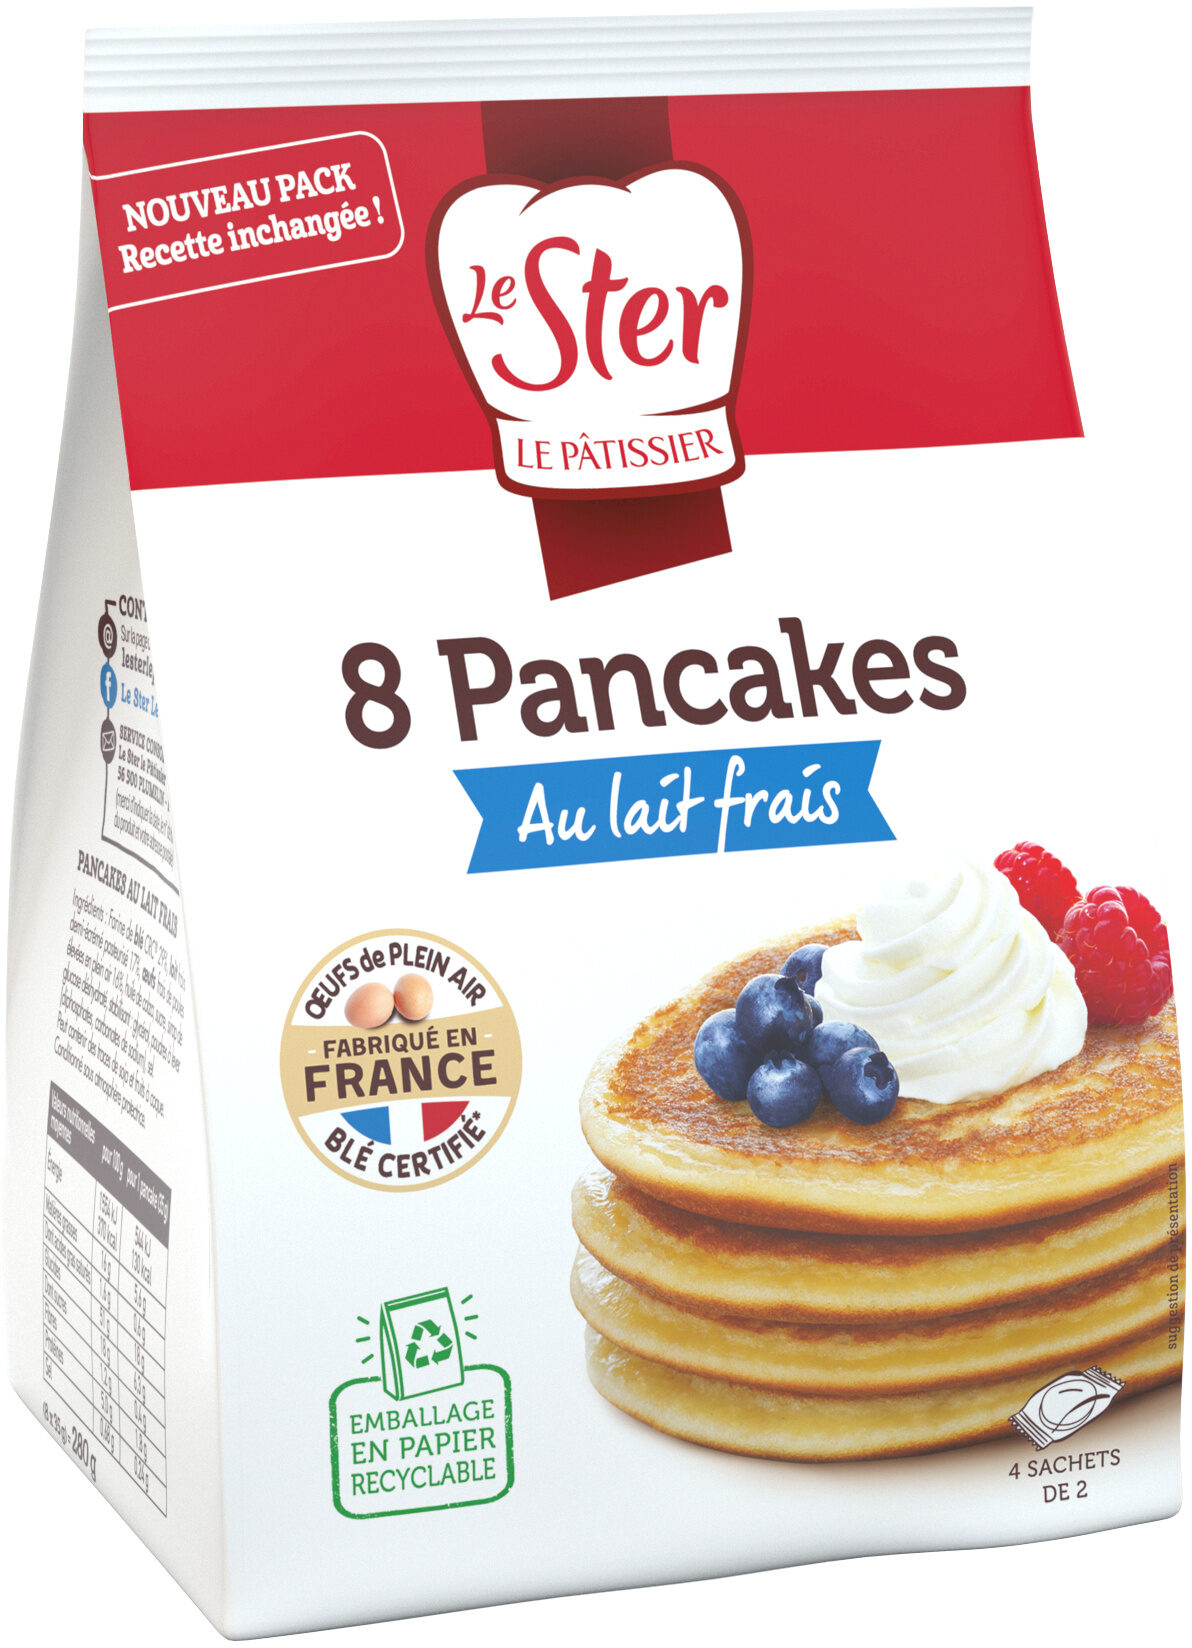 Pancakes au lait frais - Product - fr